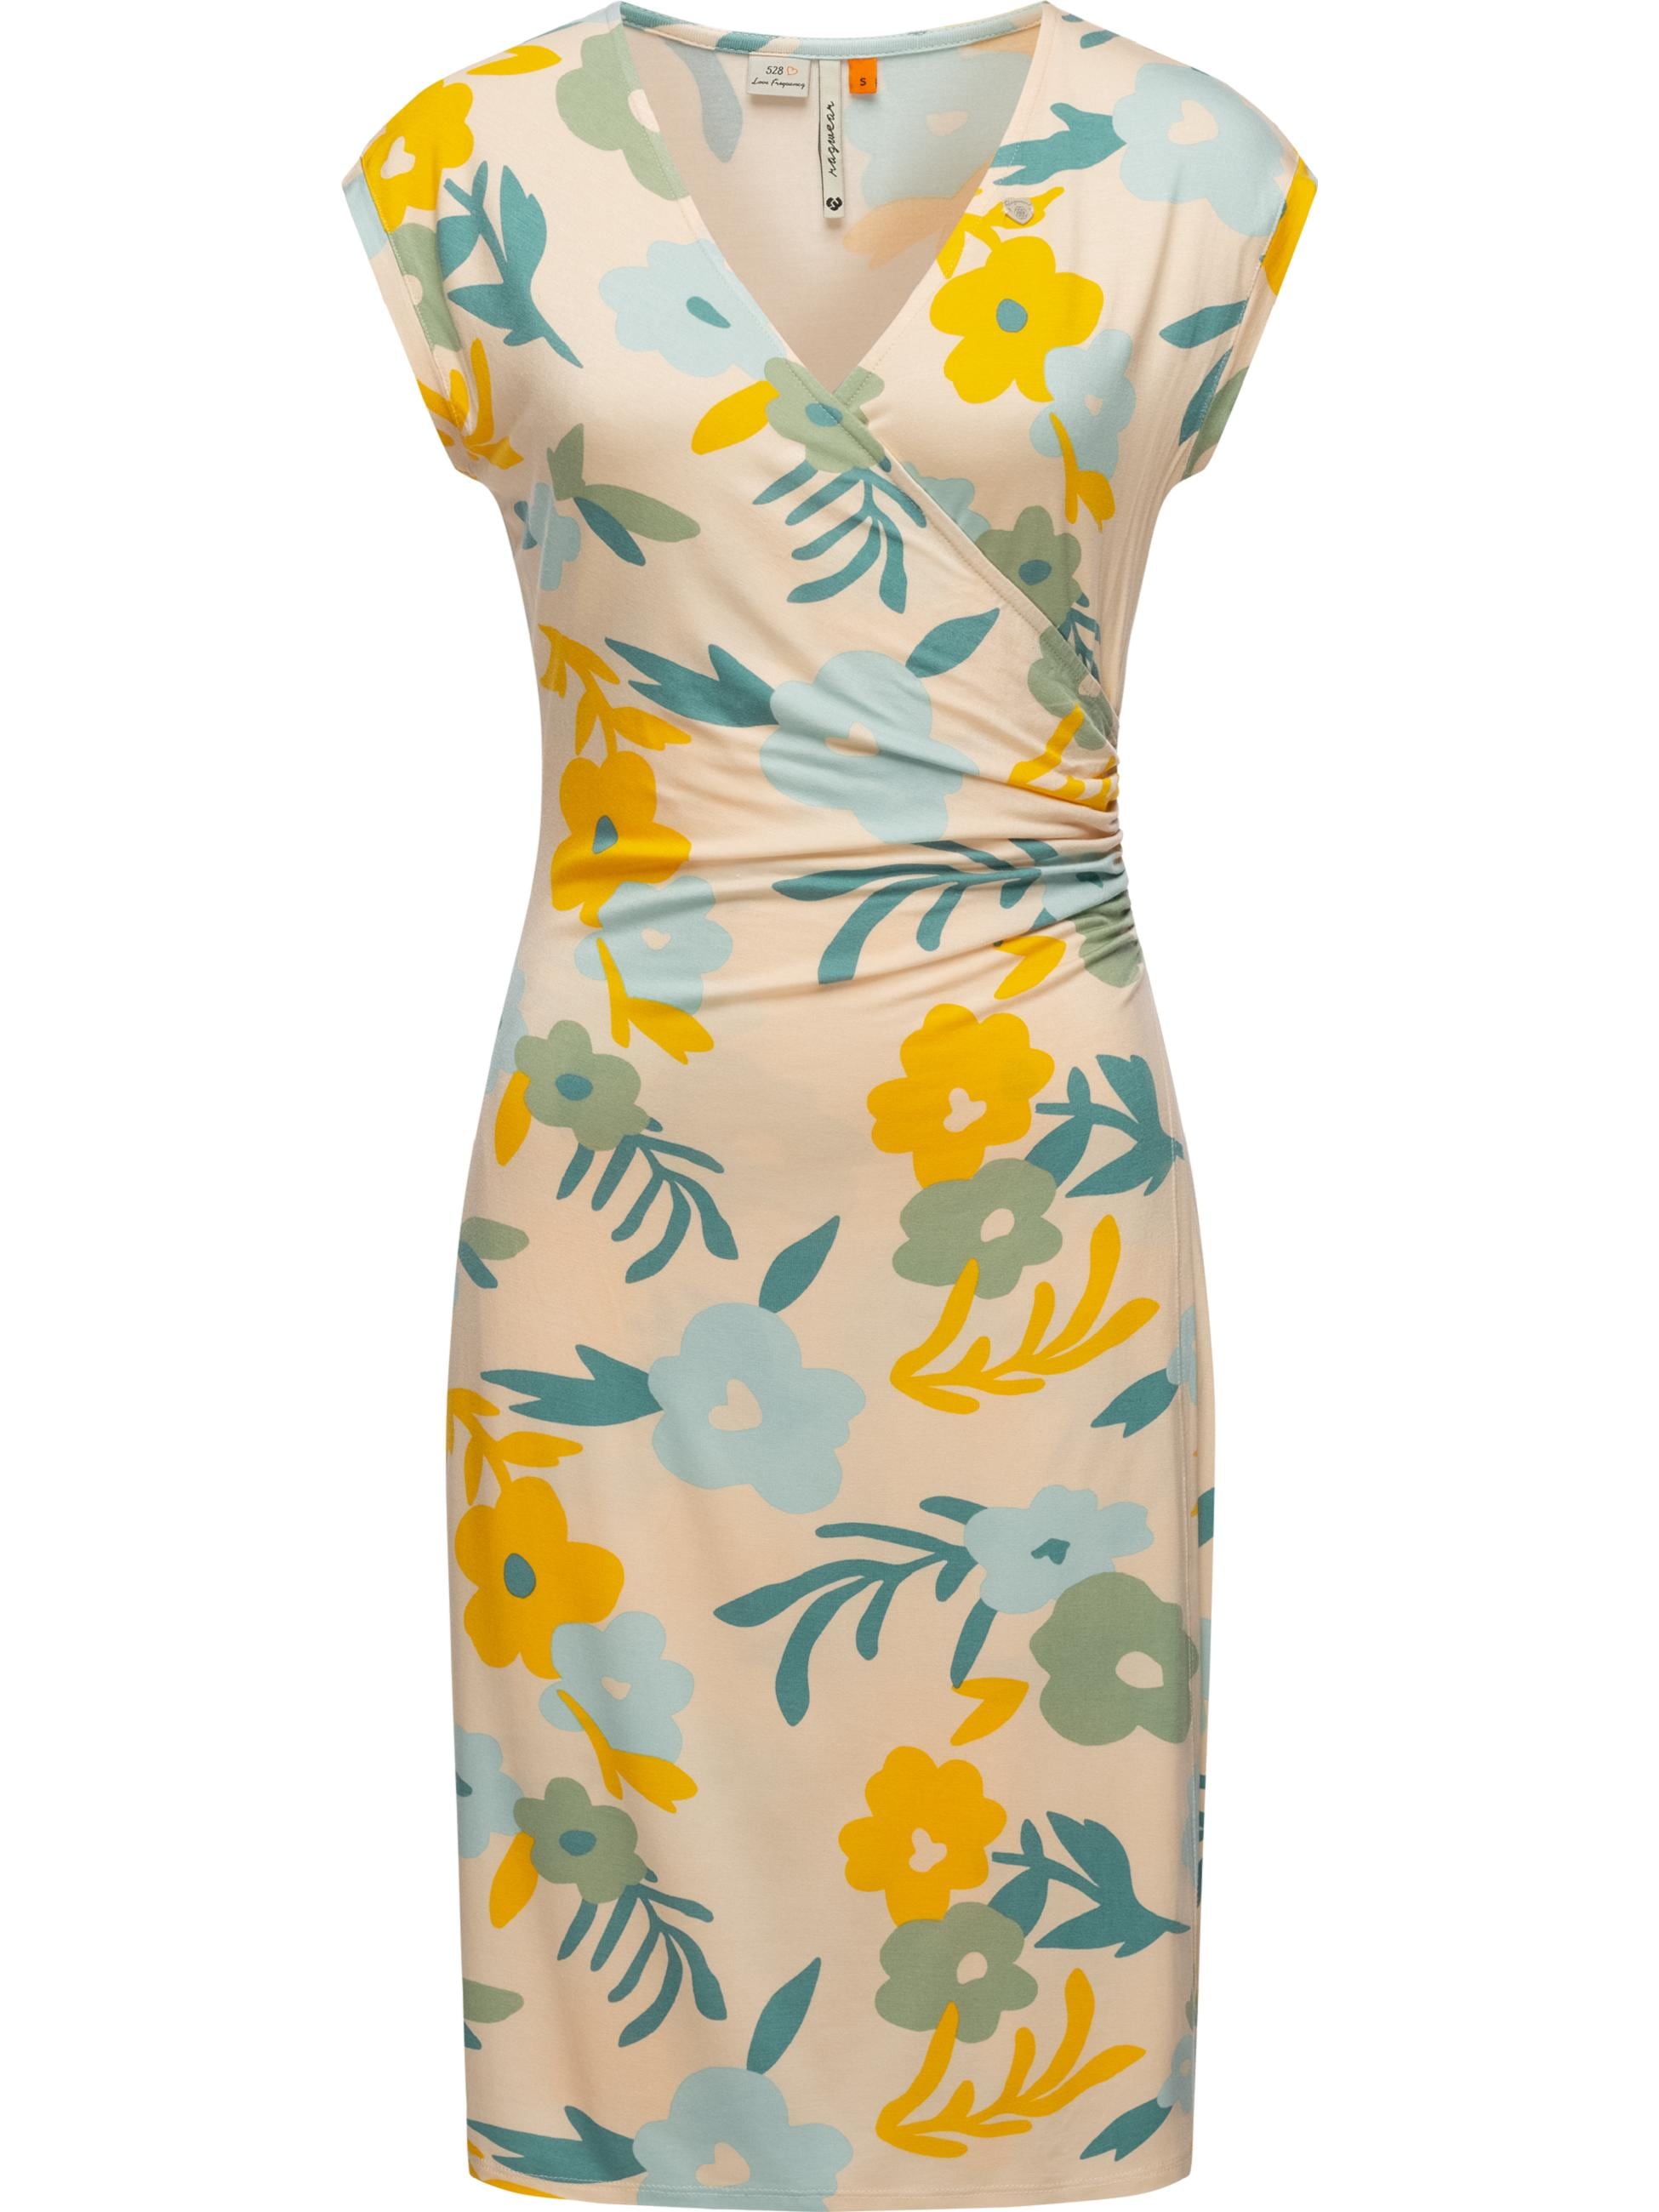 Etuikleid »Sommerkleid Crupi Print«, figurbetontes Sommerkleid mit Raffung an der Taille